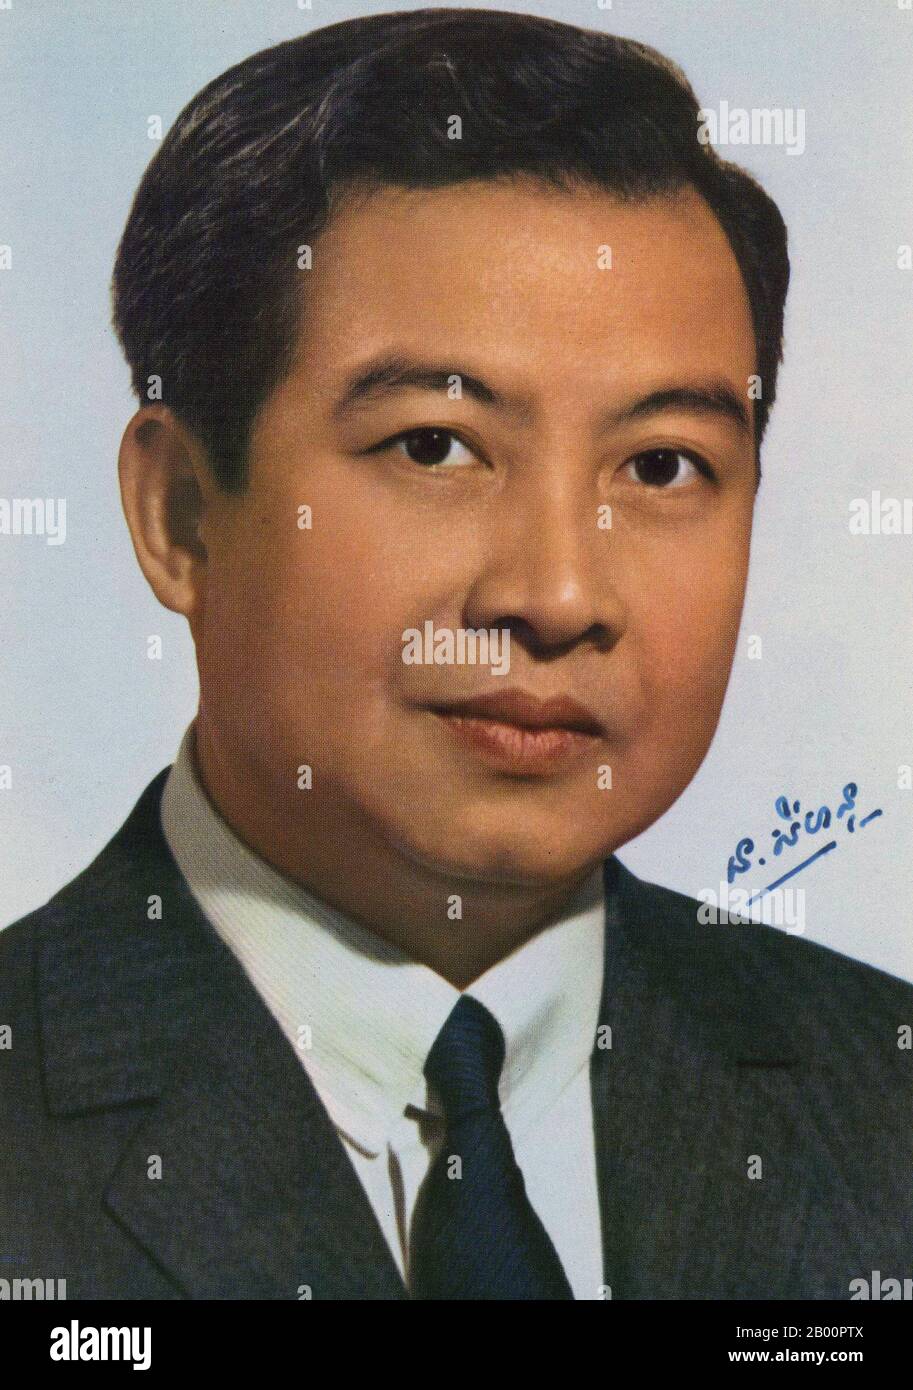 Cambodge : photo signée de Norodom Sihanouk, roi du Cambodge, c. Norodom Sihanouk (né le 31 octobre 1922) fut le roi du Cambodge de 1941 à 1955 et de nouveau de 1993 jusqu'à sa semi-retraite et son abdication volontaire le 7 octobre 2004 en faveur de son fils, l'actuel roi Norodom Sihamoni. 1952 Depuis son abdication, il est connu comme le Roi-Père du Cambodge, une position dans laquelle il conserve beaucoup de ses anciennes responsabilités de monarque constitutionnel. Banque D'Images